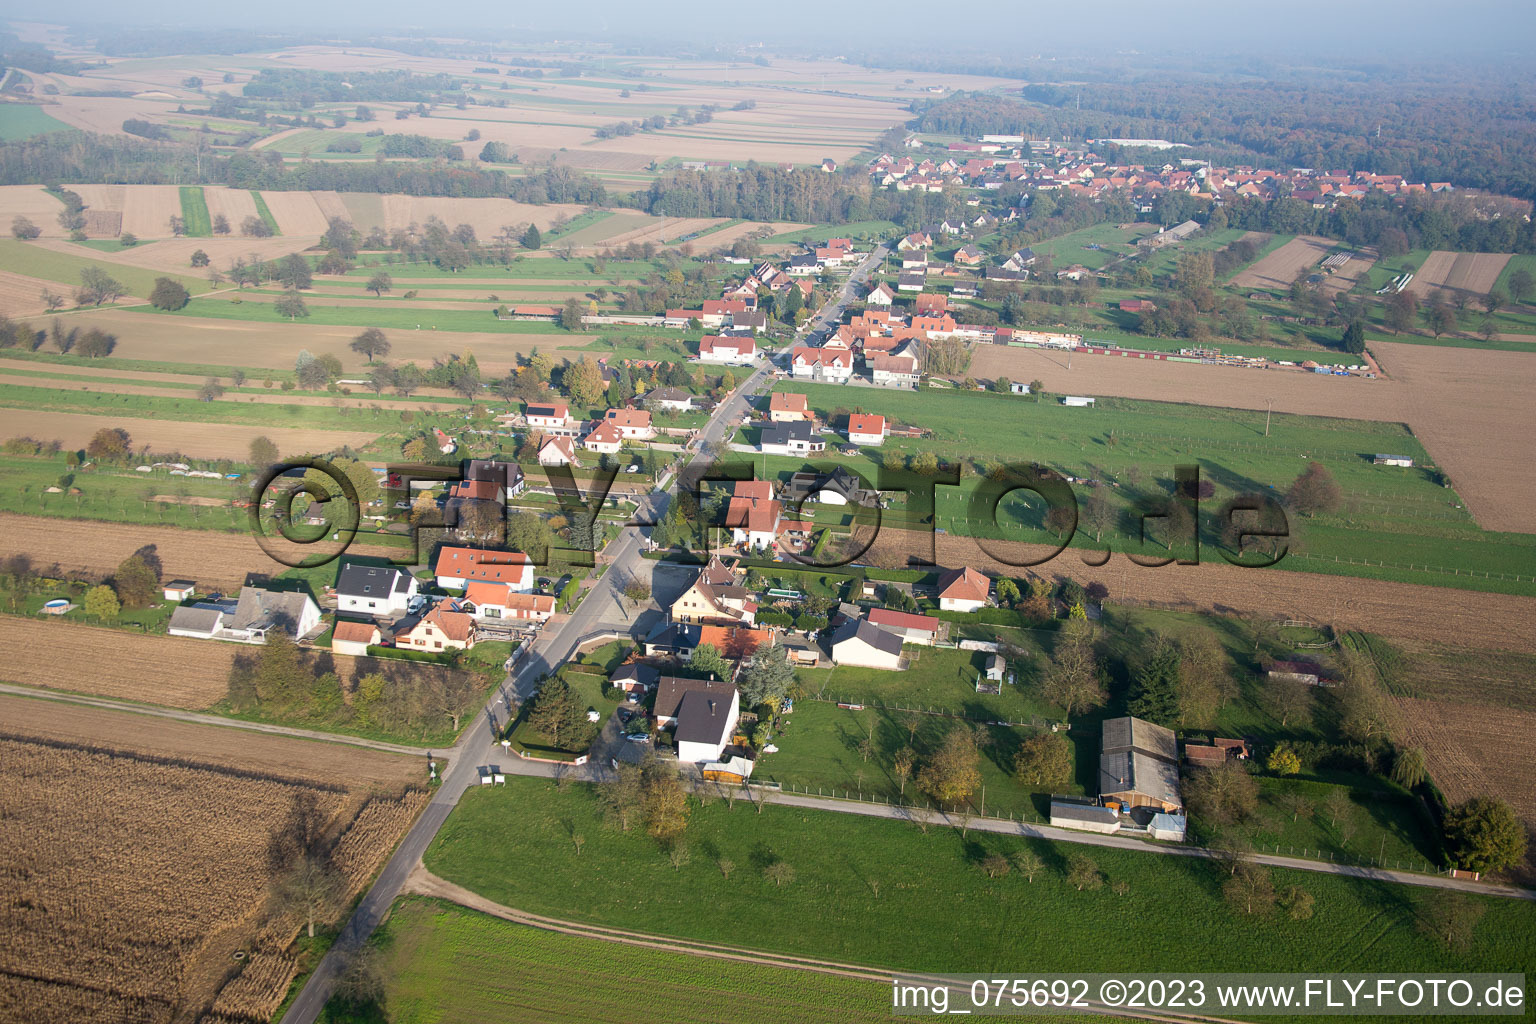 Vue aérienne de Schaffhouse-près-Seltz dans le département Bas Rhin, France